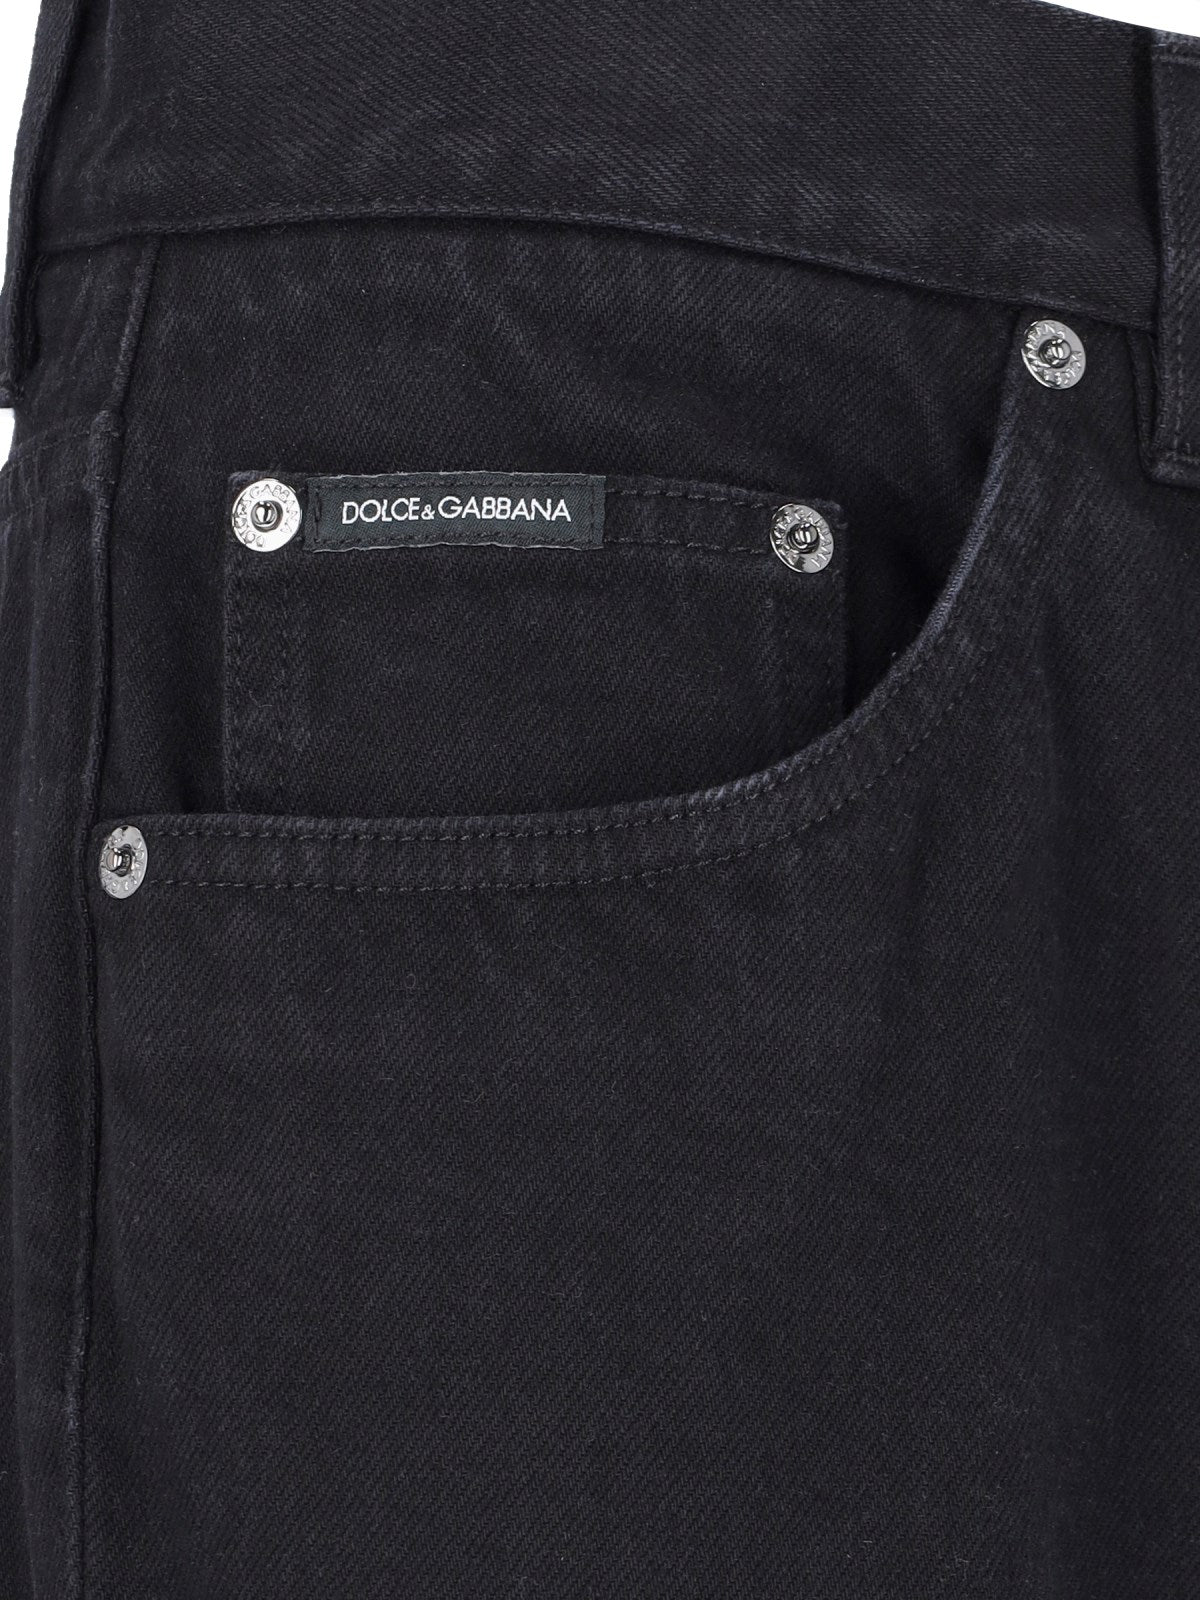 Dolce & Gabbana Jeans dritti "classic"-Jeans dritti-Dolce & Gabbana-Jeans dritti "classic" Dolce & Gabbana, in cotone nero, chiusura bottone e zip, passanti cintura, design cinque tasche, dettaglio placca metallica dorata retro, gamba dritta.-Dresso